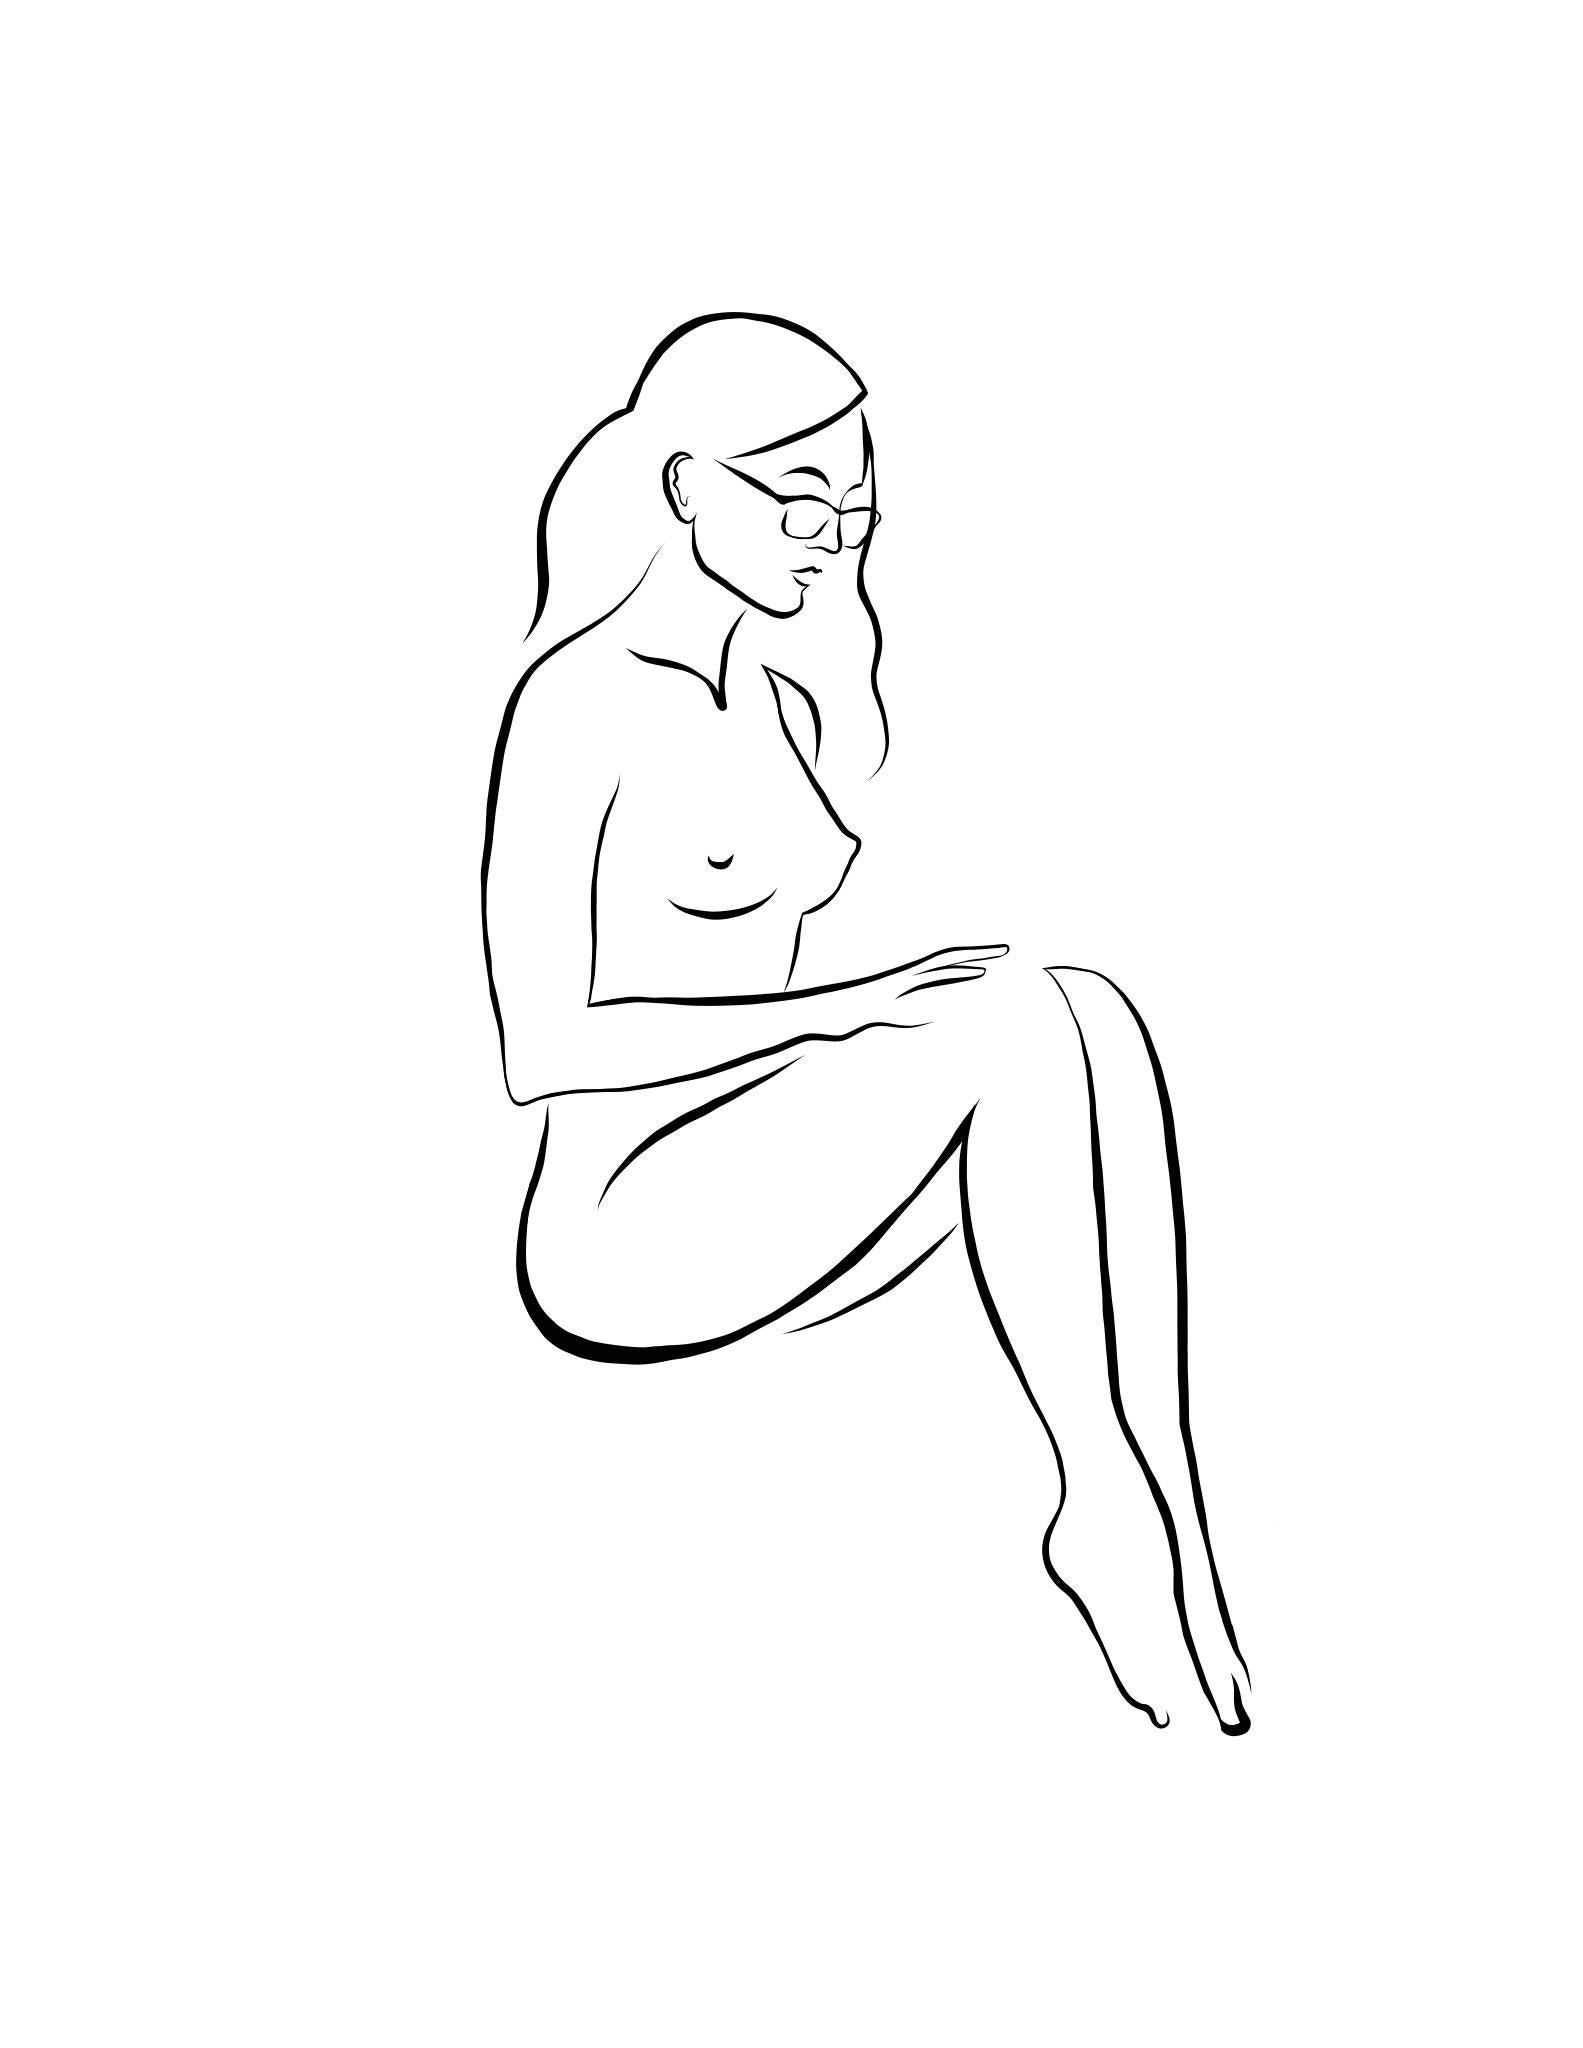 Haiku n°52, 1/50 - Dessin numérique représentant une femme nue assise